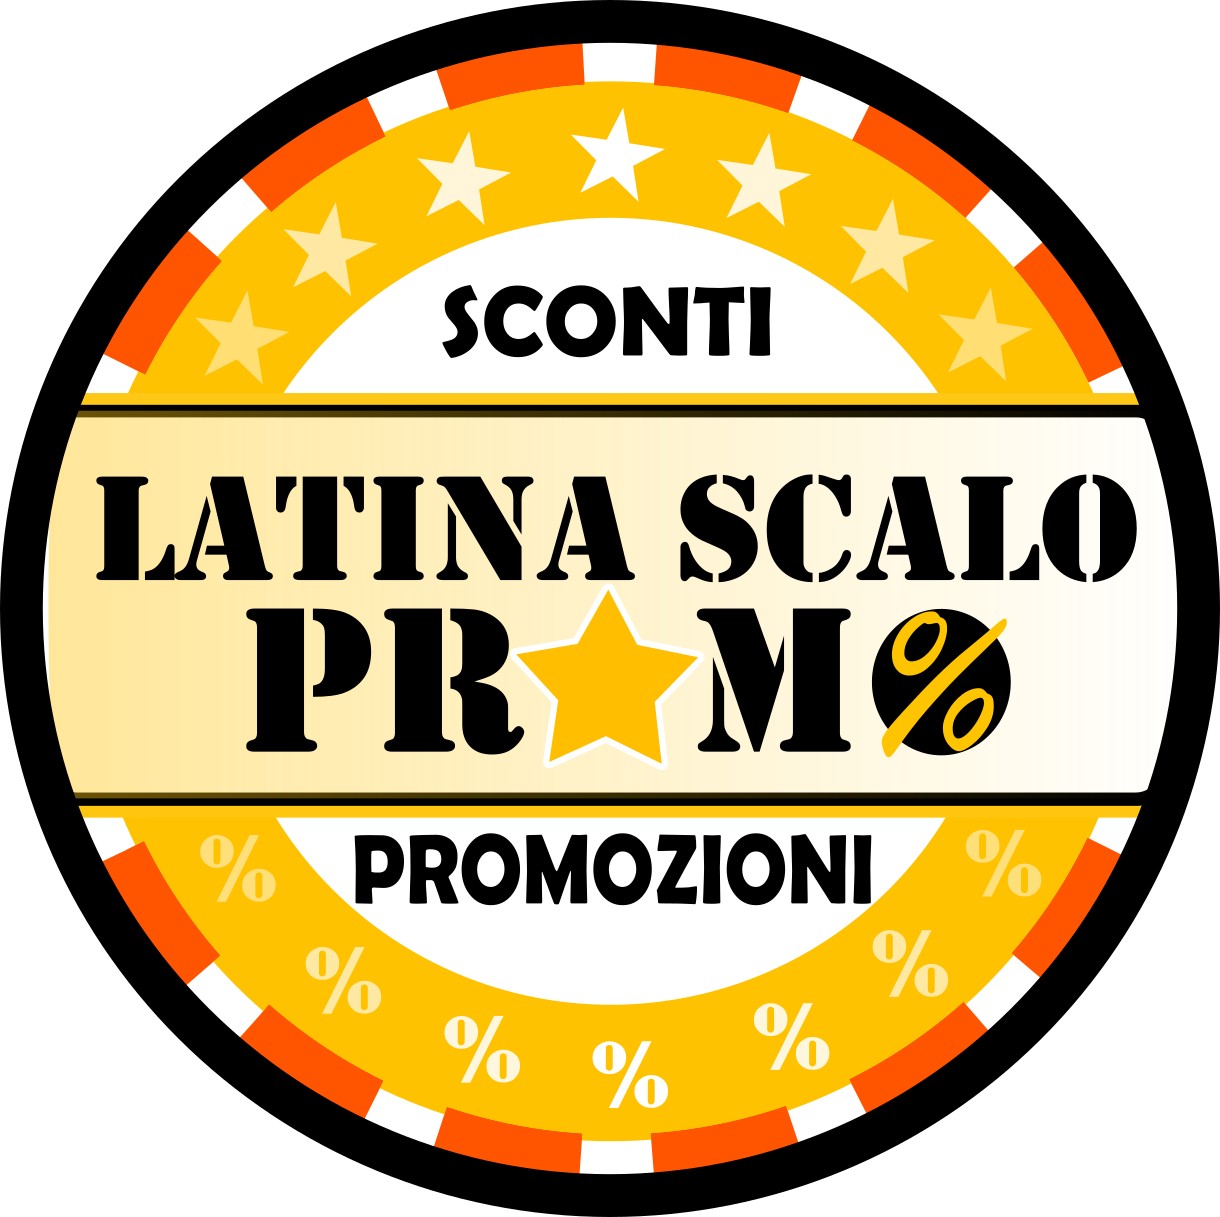 Nasce Latina Scalo Promo, la vetrina delle offerte!